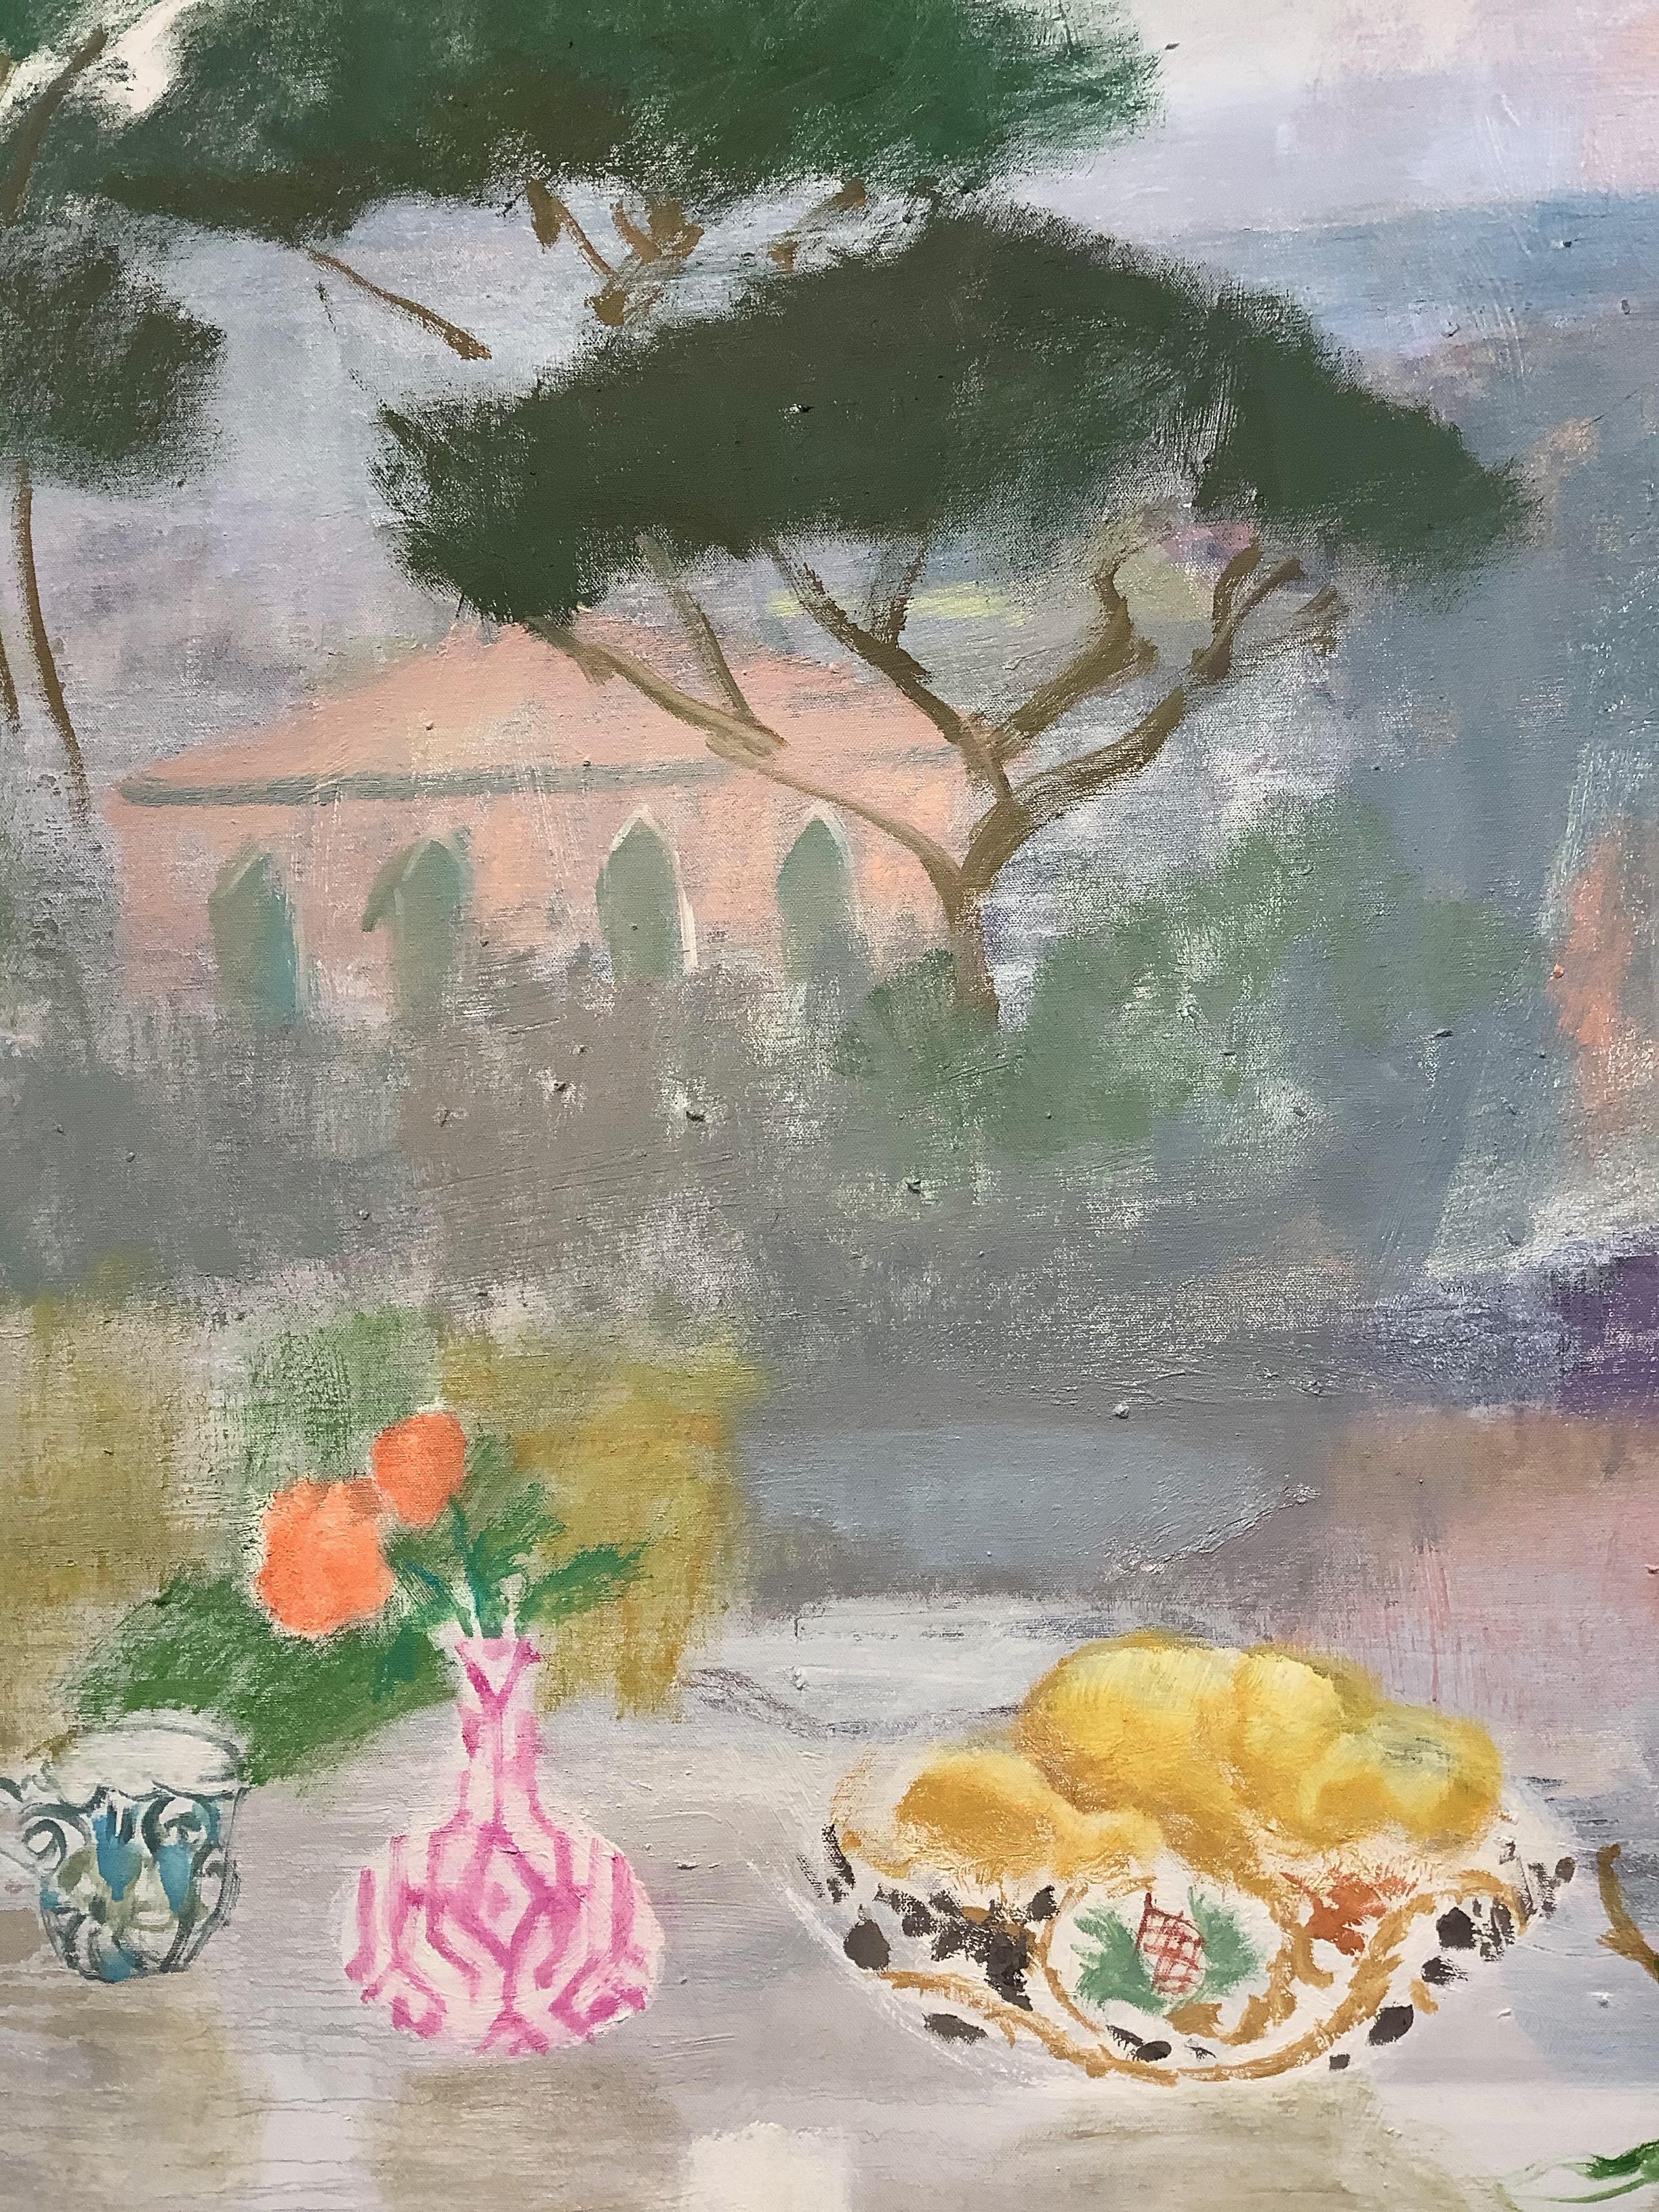 Eine luftig-leichte, einladende Szene im Freien mit einem Stillleben-Arrangement aus Pfirsichblüten in einer rosa-weiß gemusterten Vase neben einer bemalten Obstschale und einer blau gemusterten Teetasse, die auf den friedlichen Moment eines